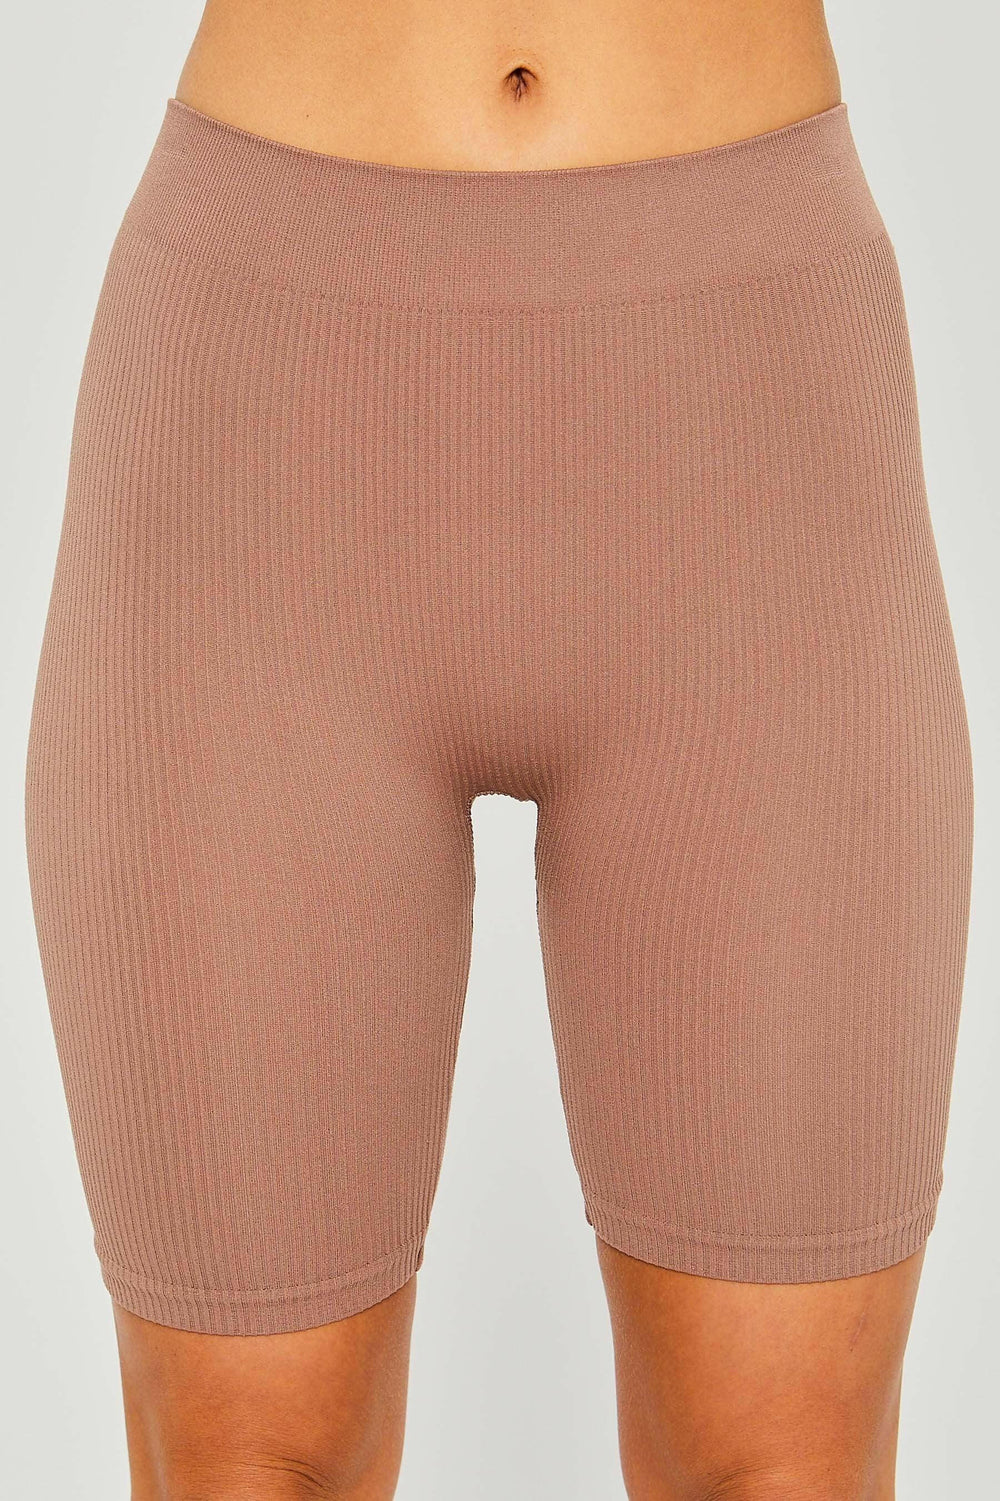 NIA seamless legging active shorts - La Belle Gina Boutique